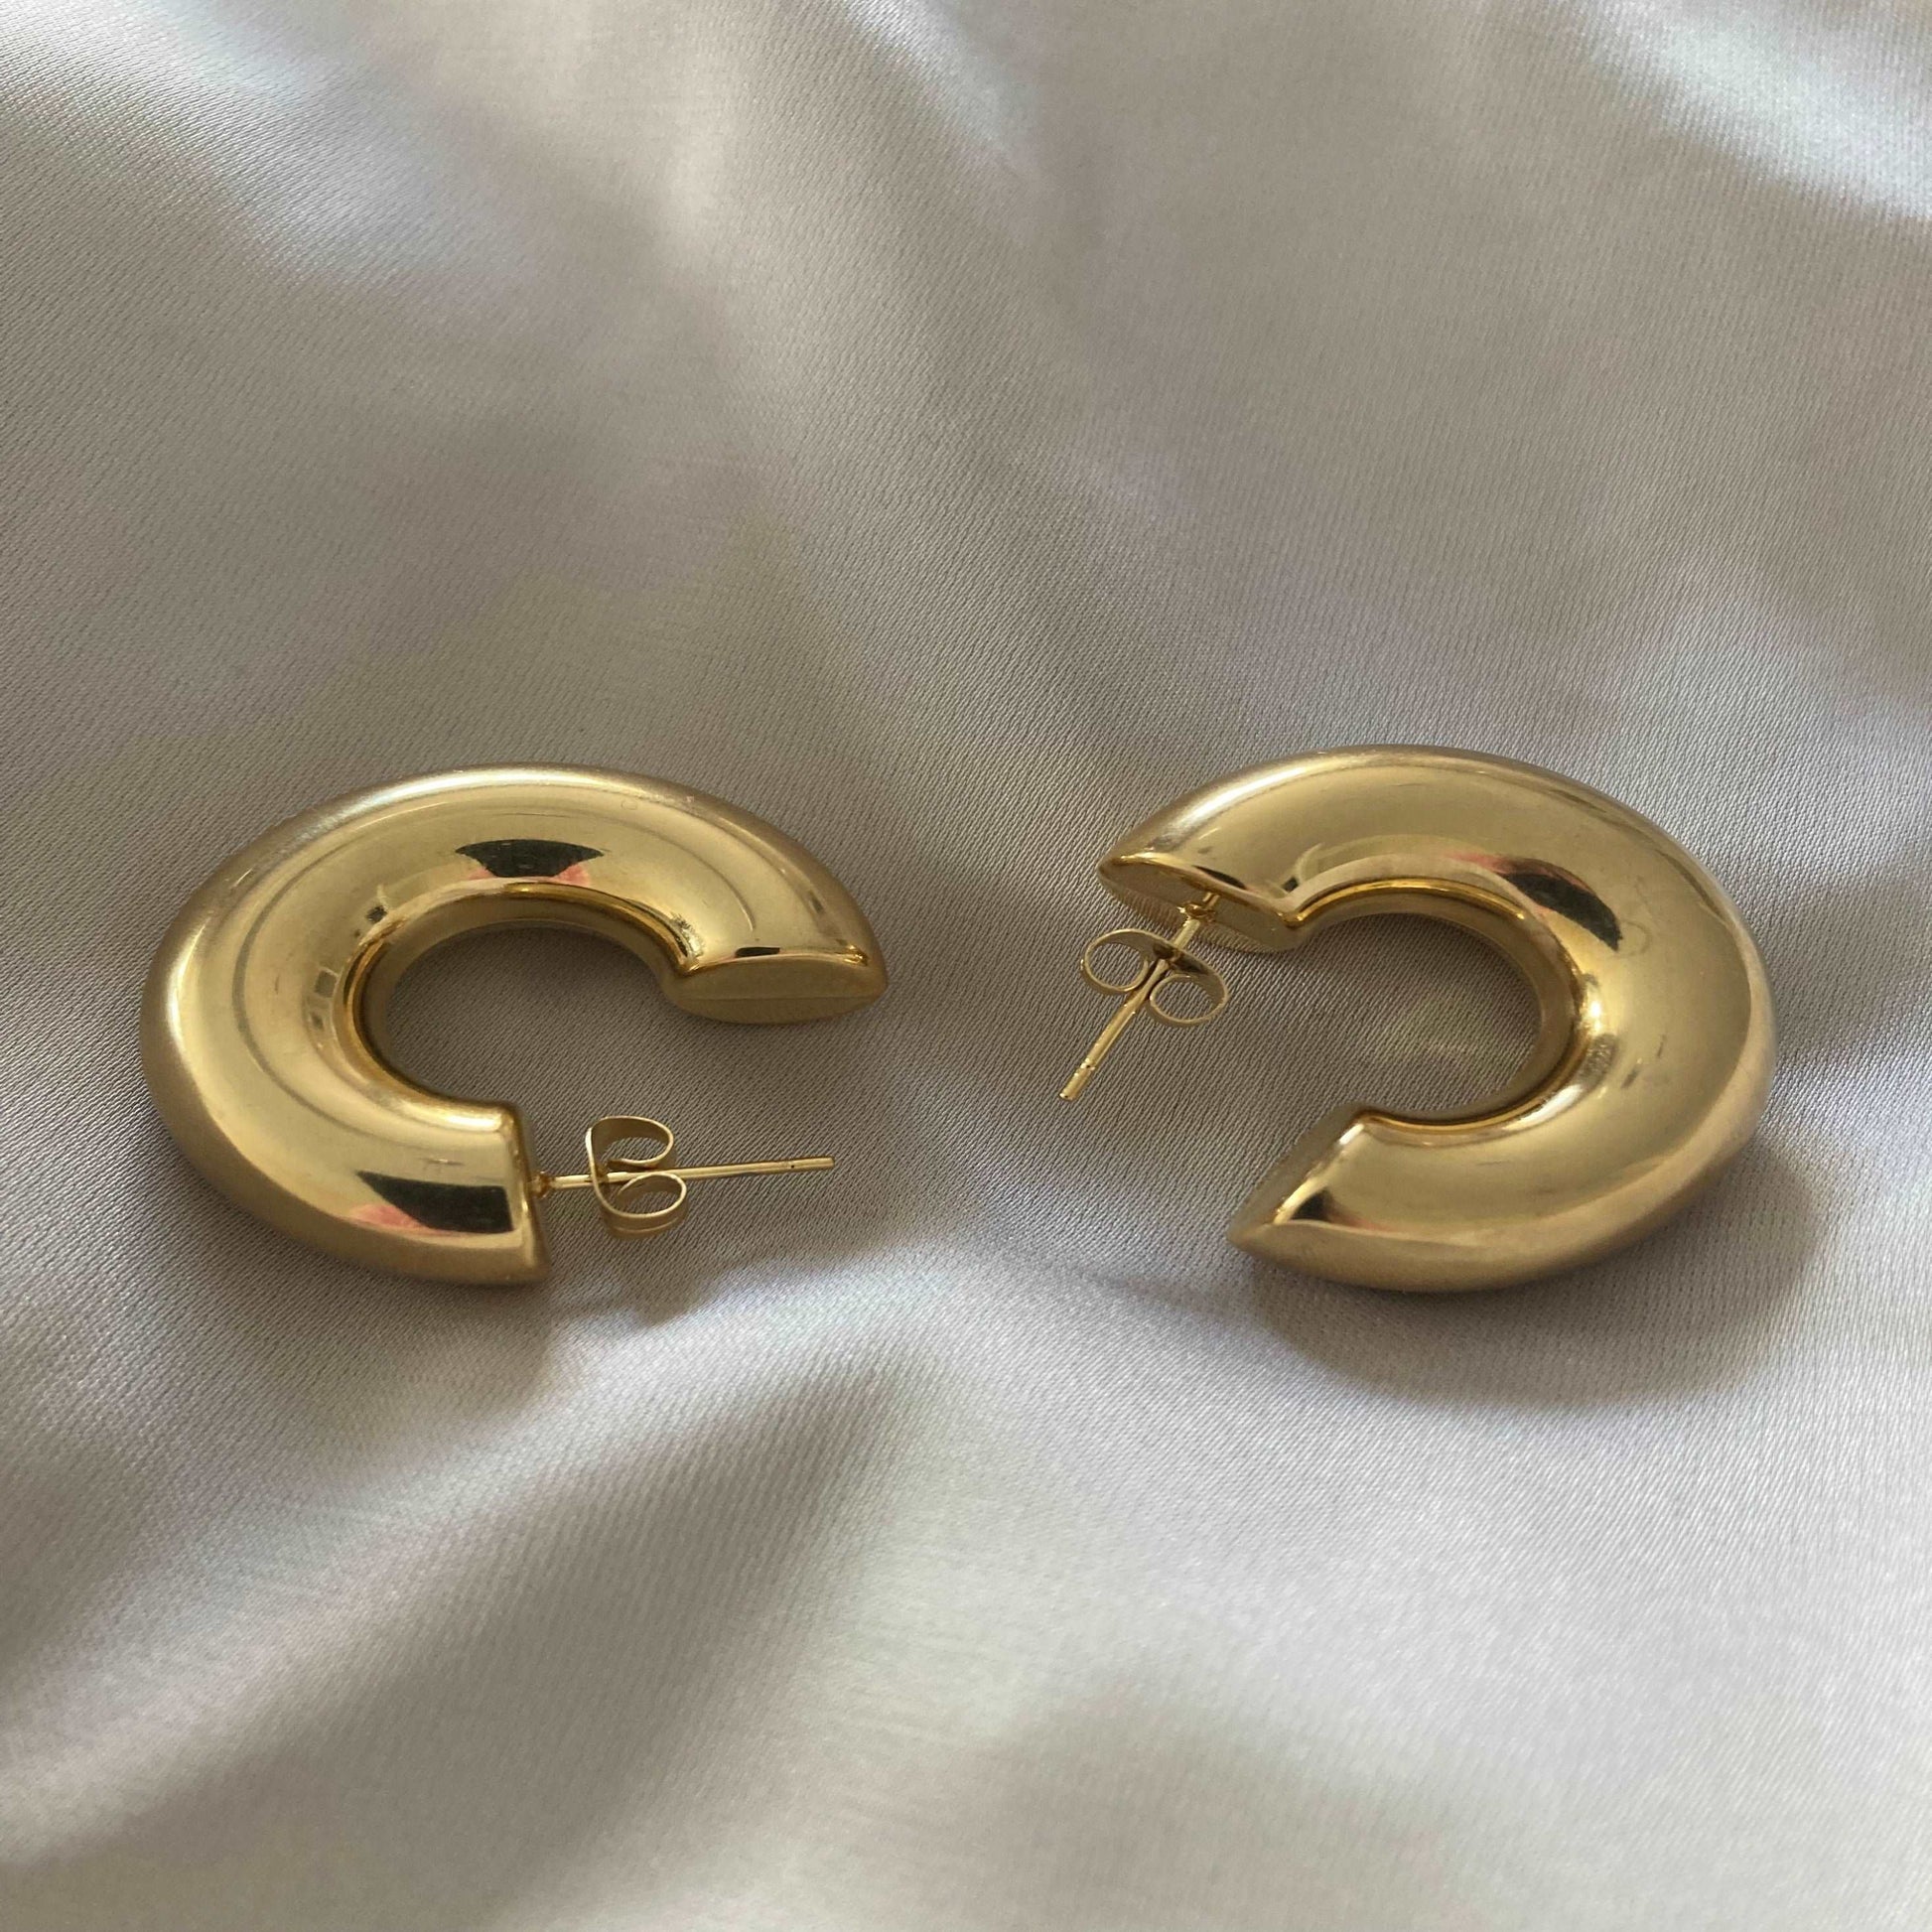 Trendy Gold Hoop Earrings - Kissed Jewellery